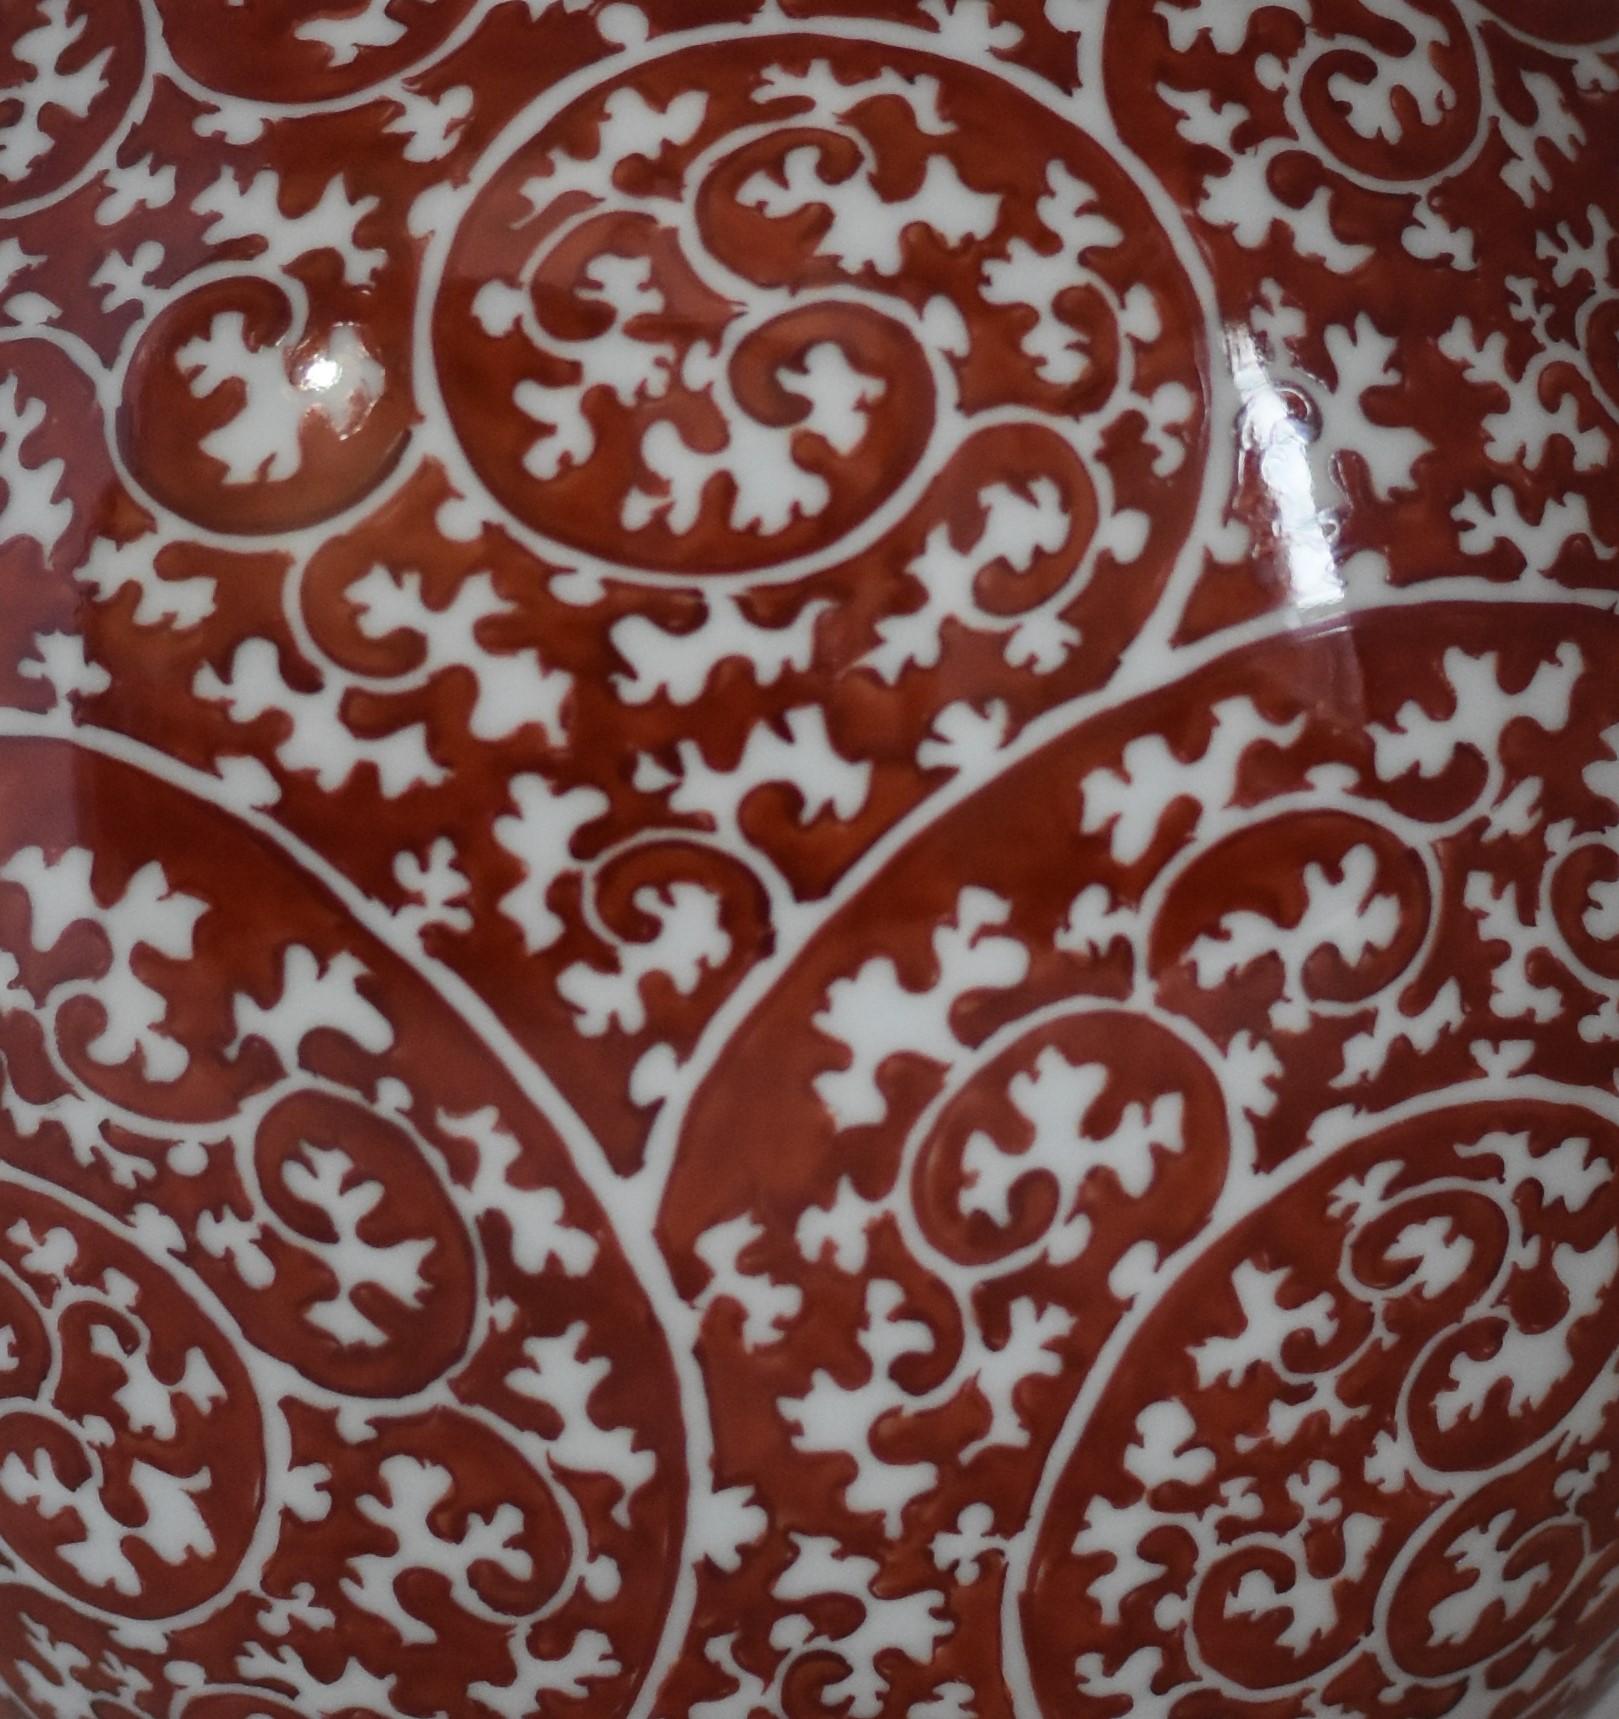 Zeitgenössische handbemalte japanische Vase aus Imari-Porzellan, das Werk eines preisgekrönten Porzellanmeisters aus der Region Imari-Arita in Japan. Diese atemberaubende Vase zeigt ein traditionelles Arita-Arabeskenmuster in tiefem Rot. Dazu hat